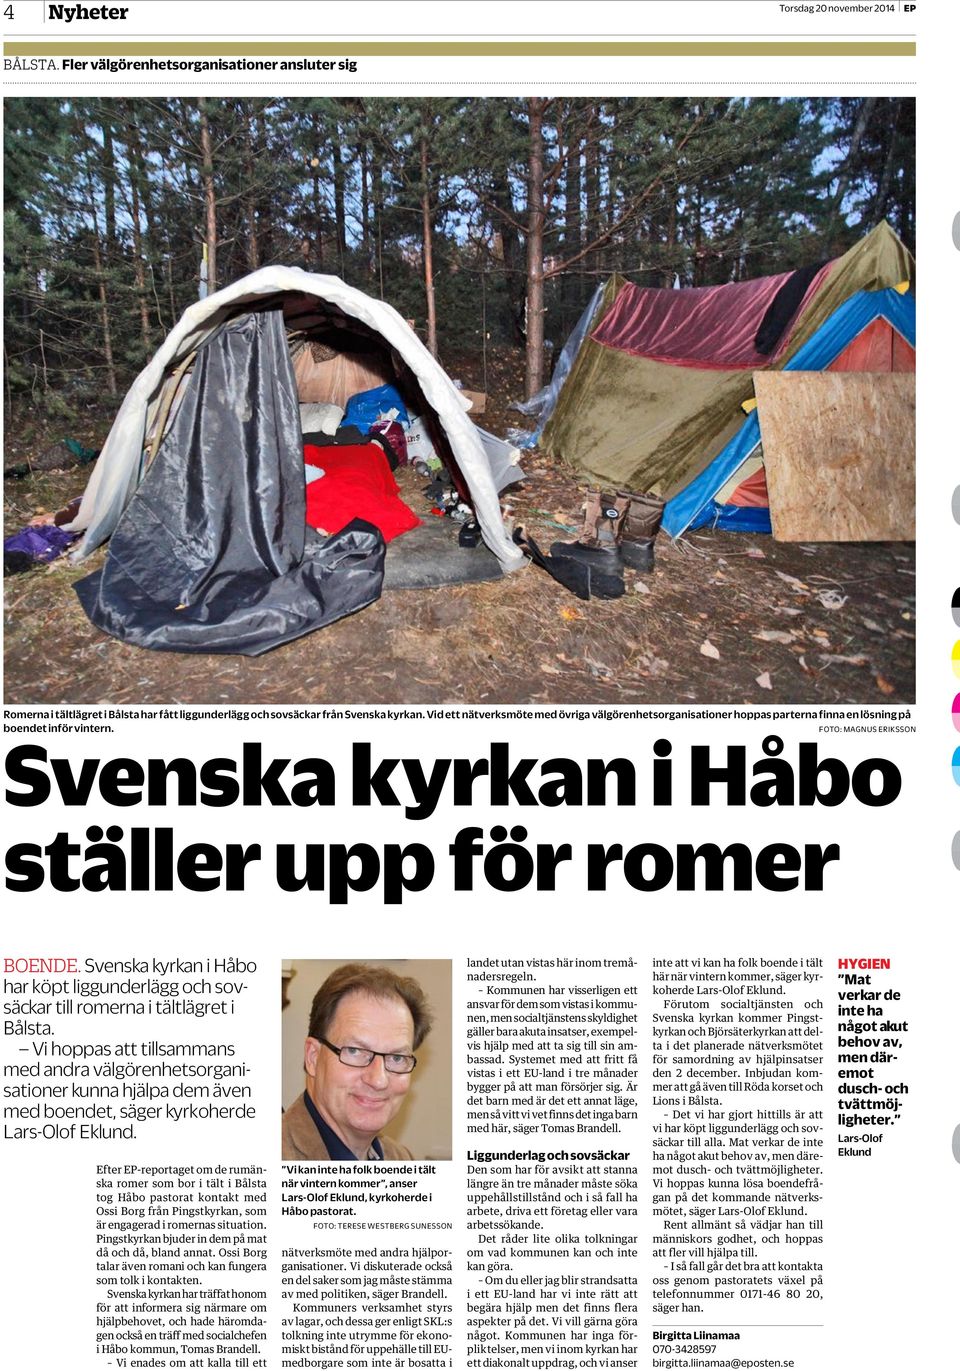 Svenska kyrkan i Håbo har köpt liggunderlägg och sovsäckar till romerna i tältlägret i Bålsta.